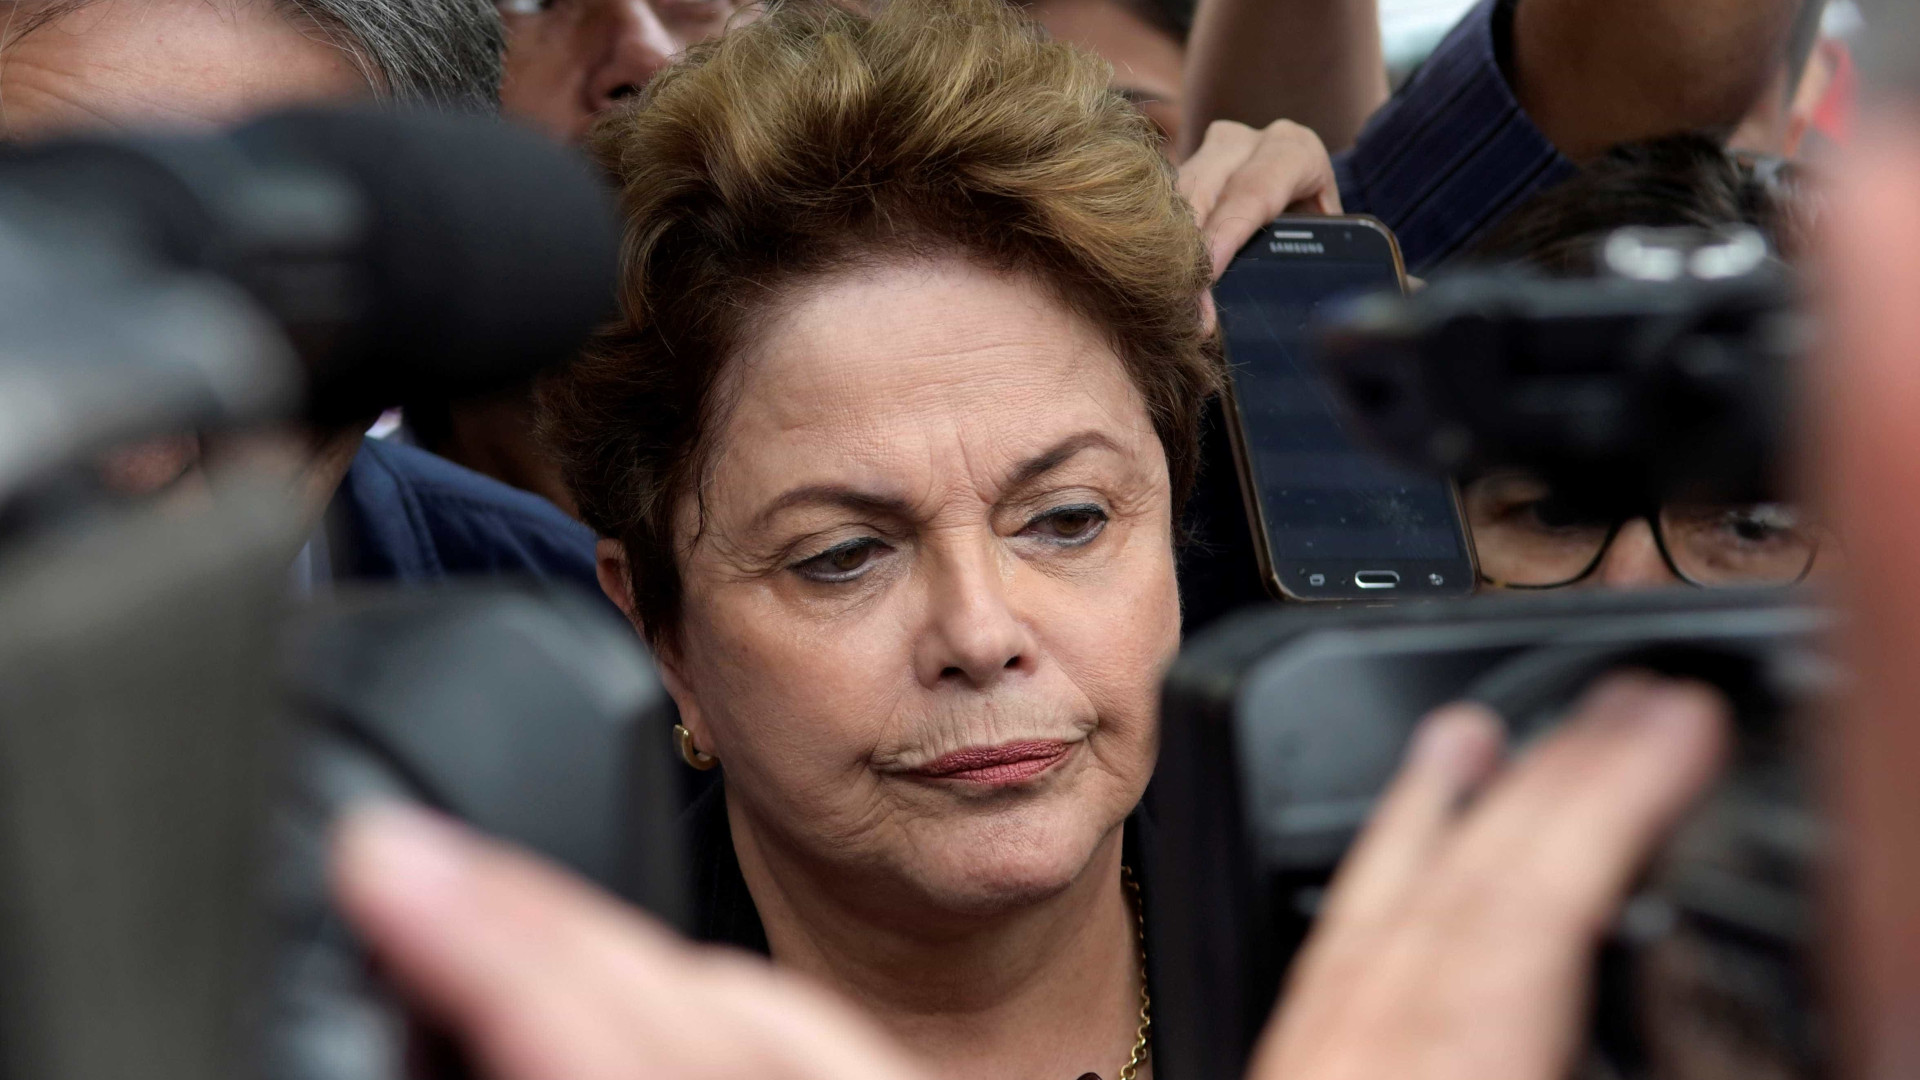 Brasil tem 3 dos 5 ex-presidentes réus na Lava Jato